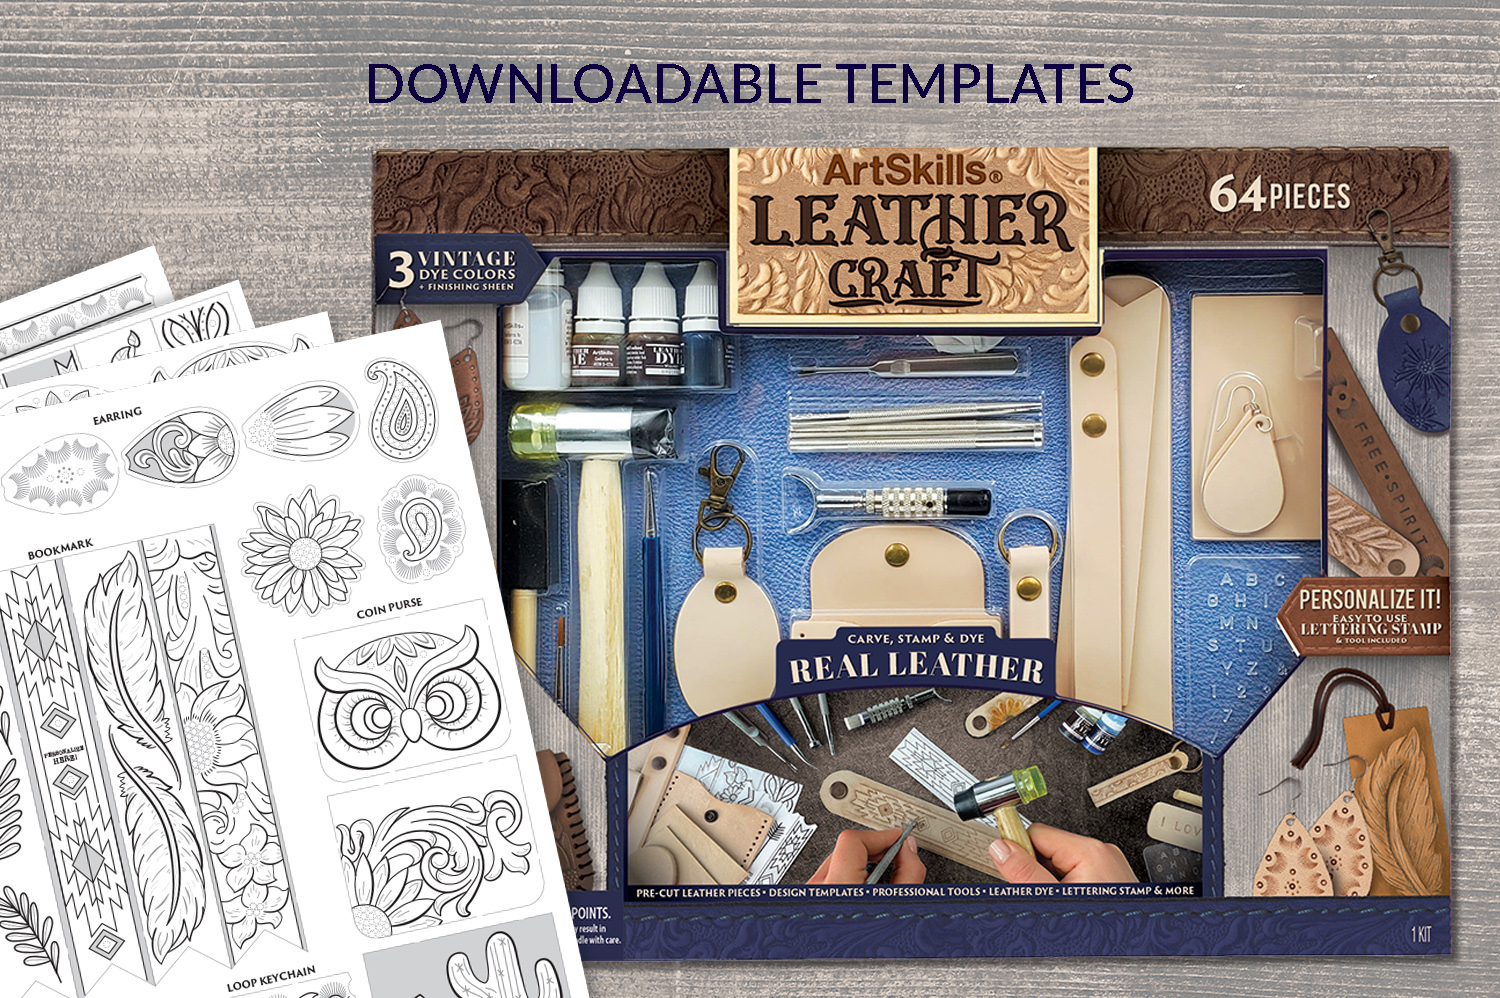 ArtSkills® Beginners Leather Working Kit